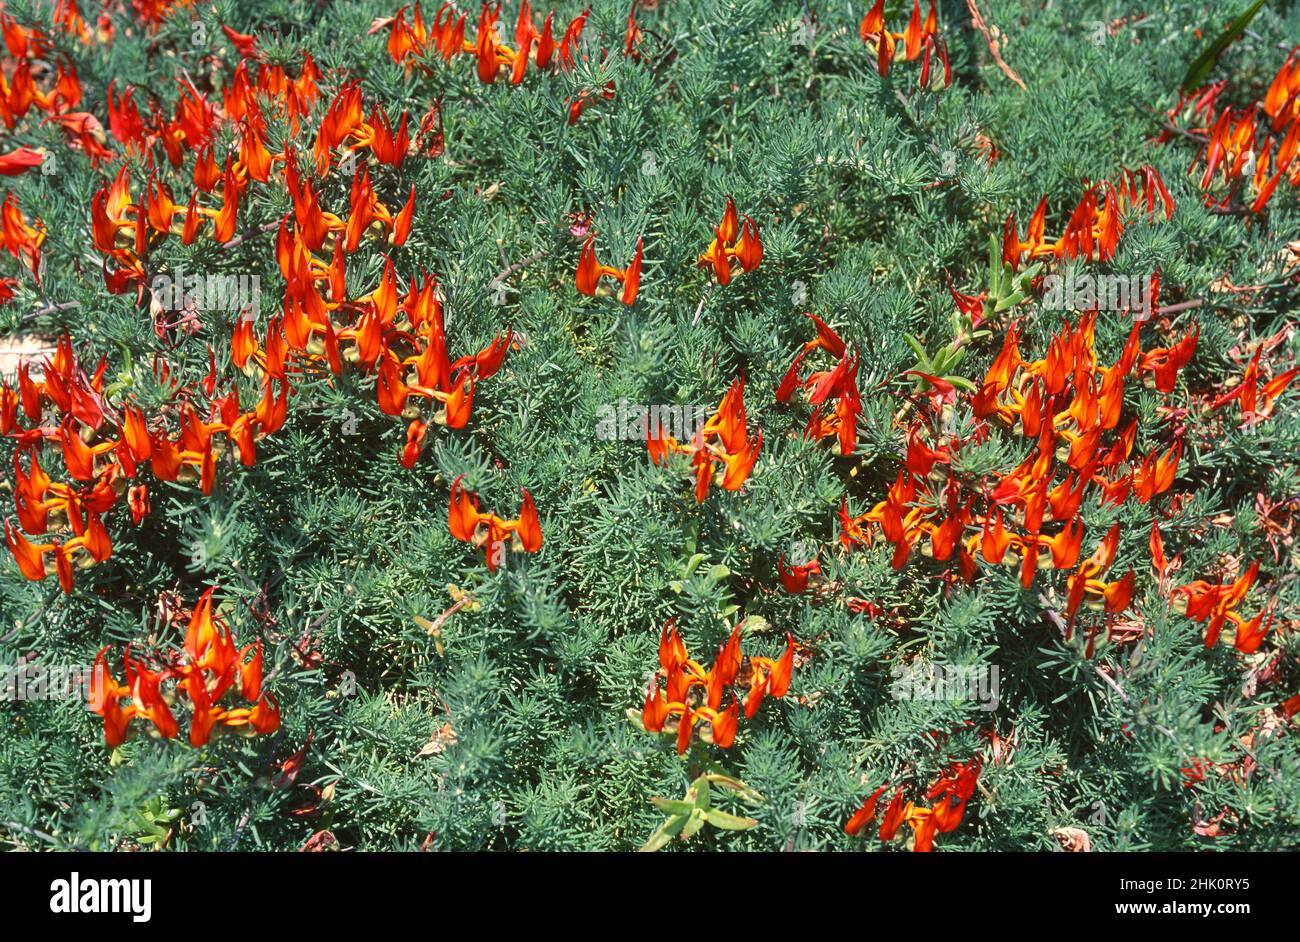 Picopaloma, il becco di Parrot o gemma di corallo (Lotus berthelotii) è un'erba prostrata perenne endemica di Tenerife, Isole Canarie, Spagna. Fiori d'arancio Foto Stock